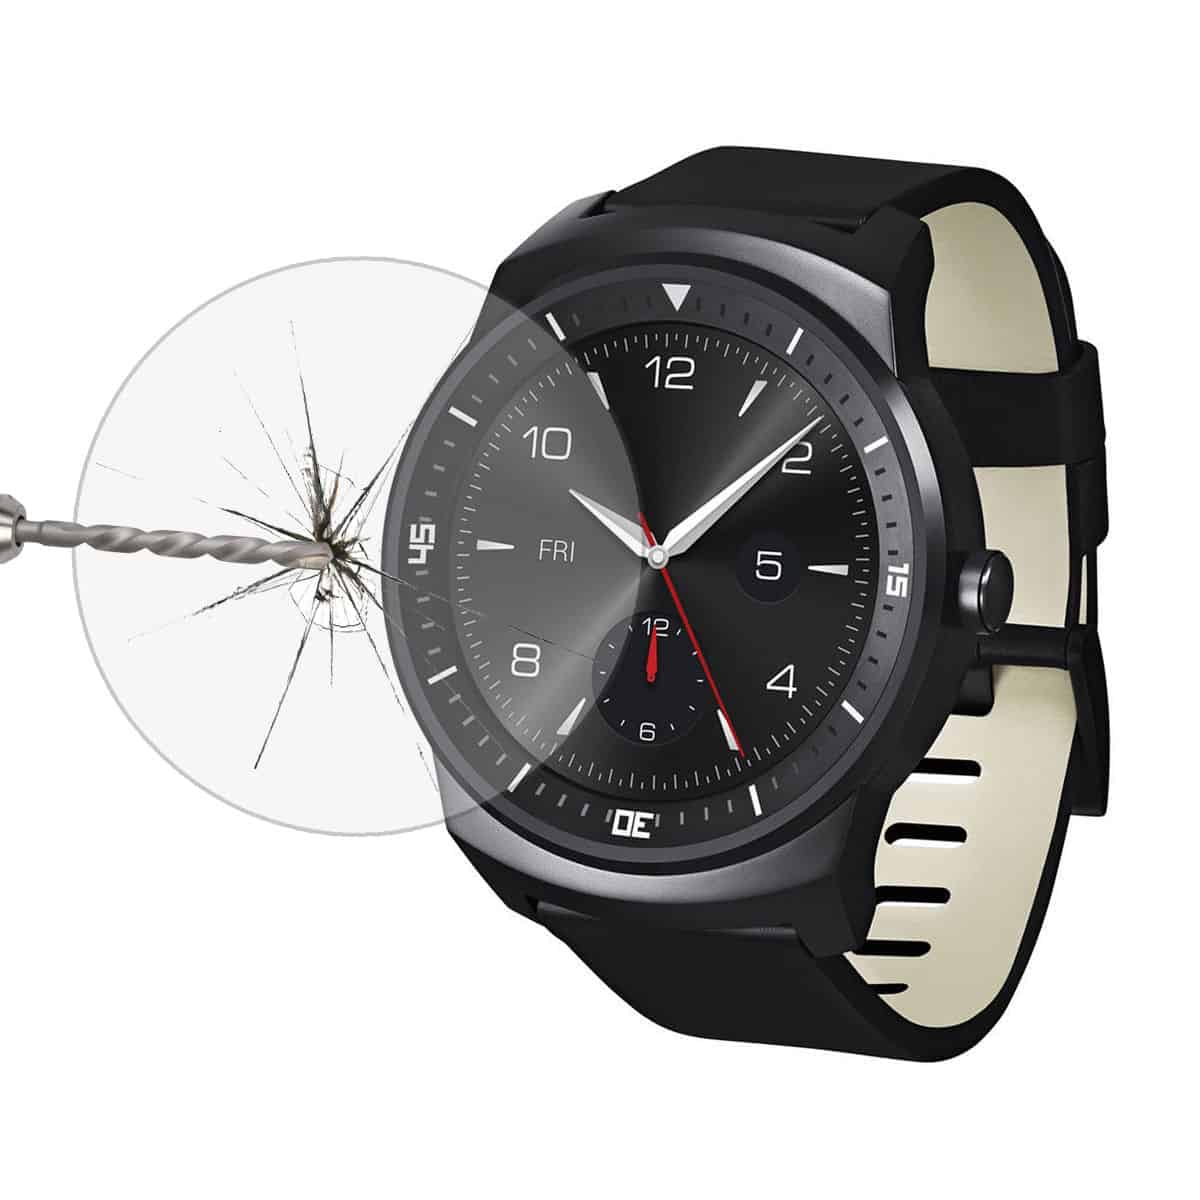 Schutzgläser aus gehärtetem Glas für die Smartwatch? Gibt es für LG G Watch R (4,01 Euro) oder Motorola Moto 360 (3,34 Euro) und der Versand ist kostenlos!